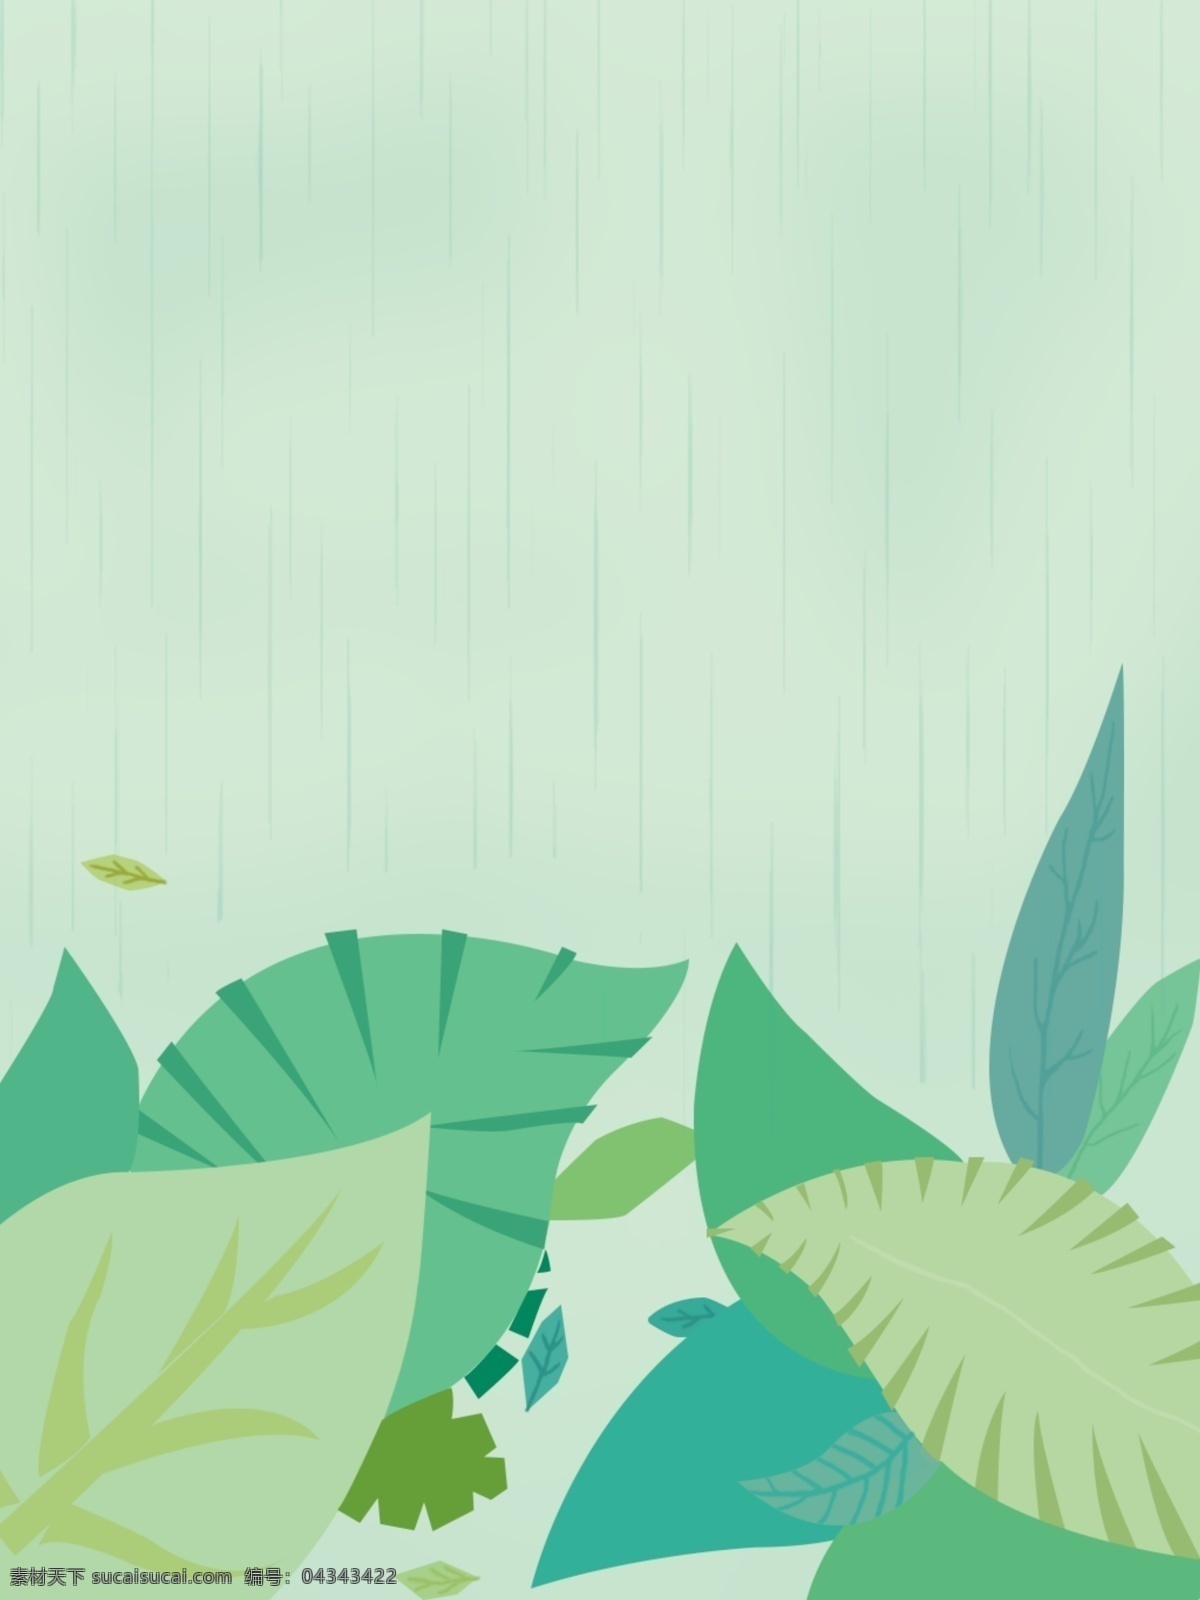 二十四节气 雨水 彩绘 背景 叶子 绿色 下雨 宣传 蓝色 活动